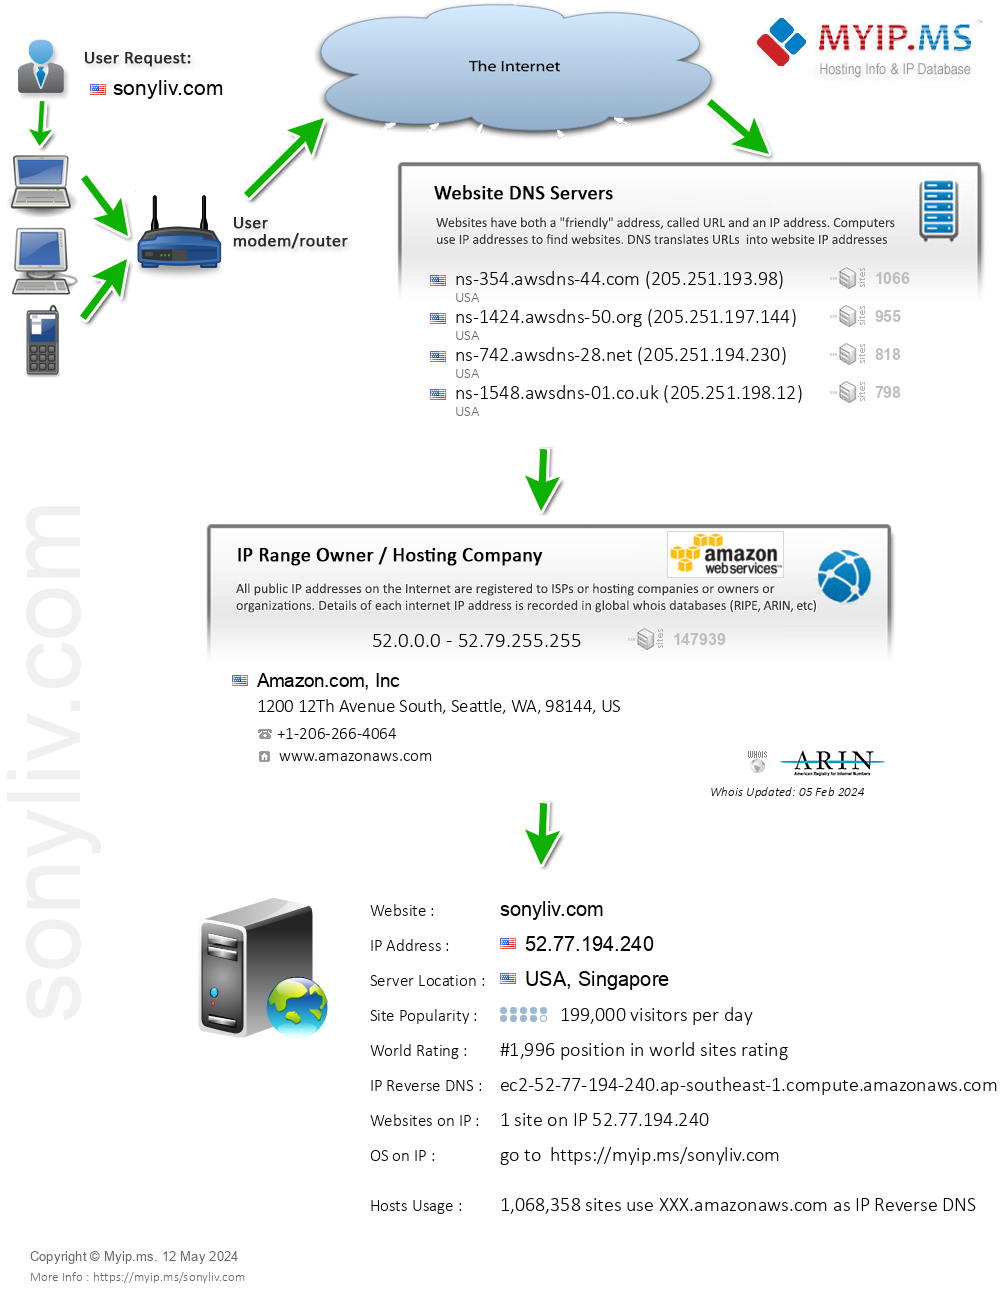 Sonyliv.com - Website Hosting Visual IP Diagram